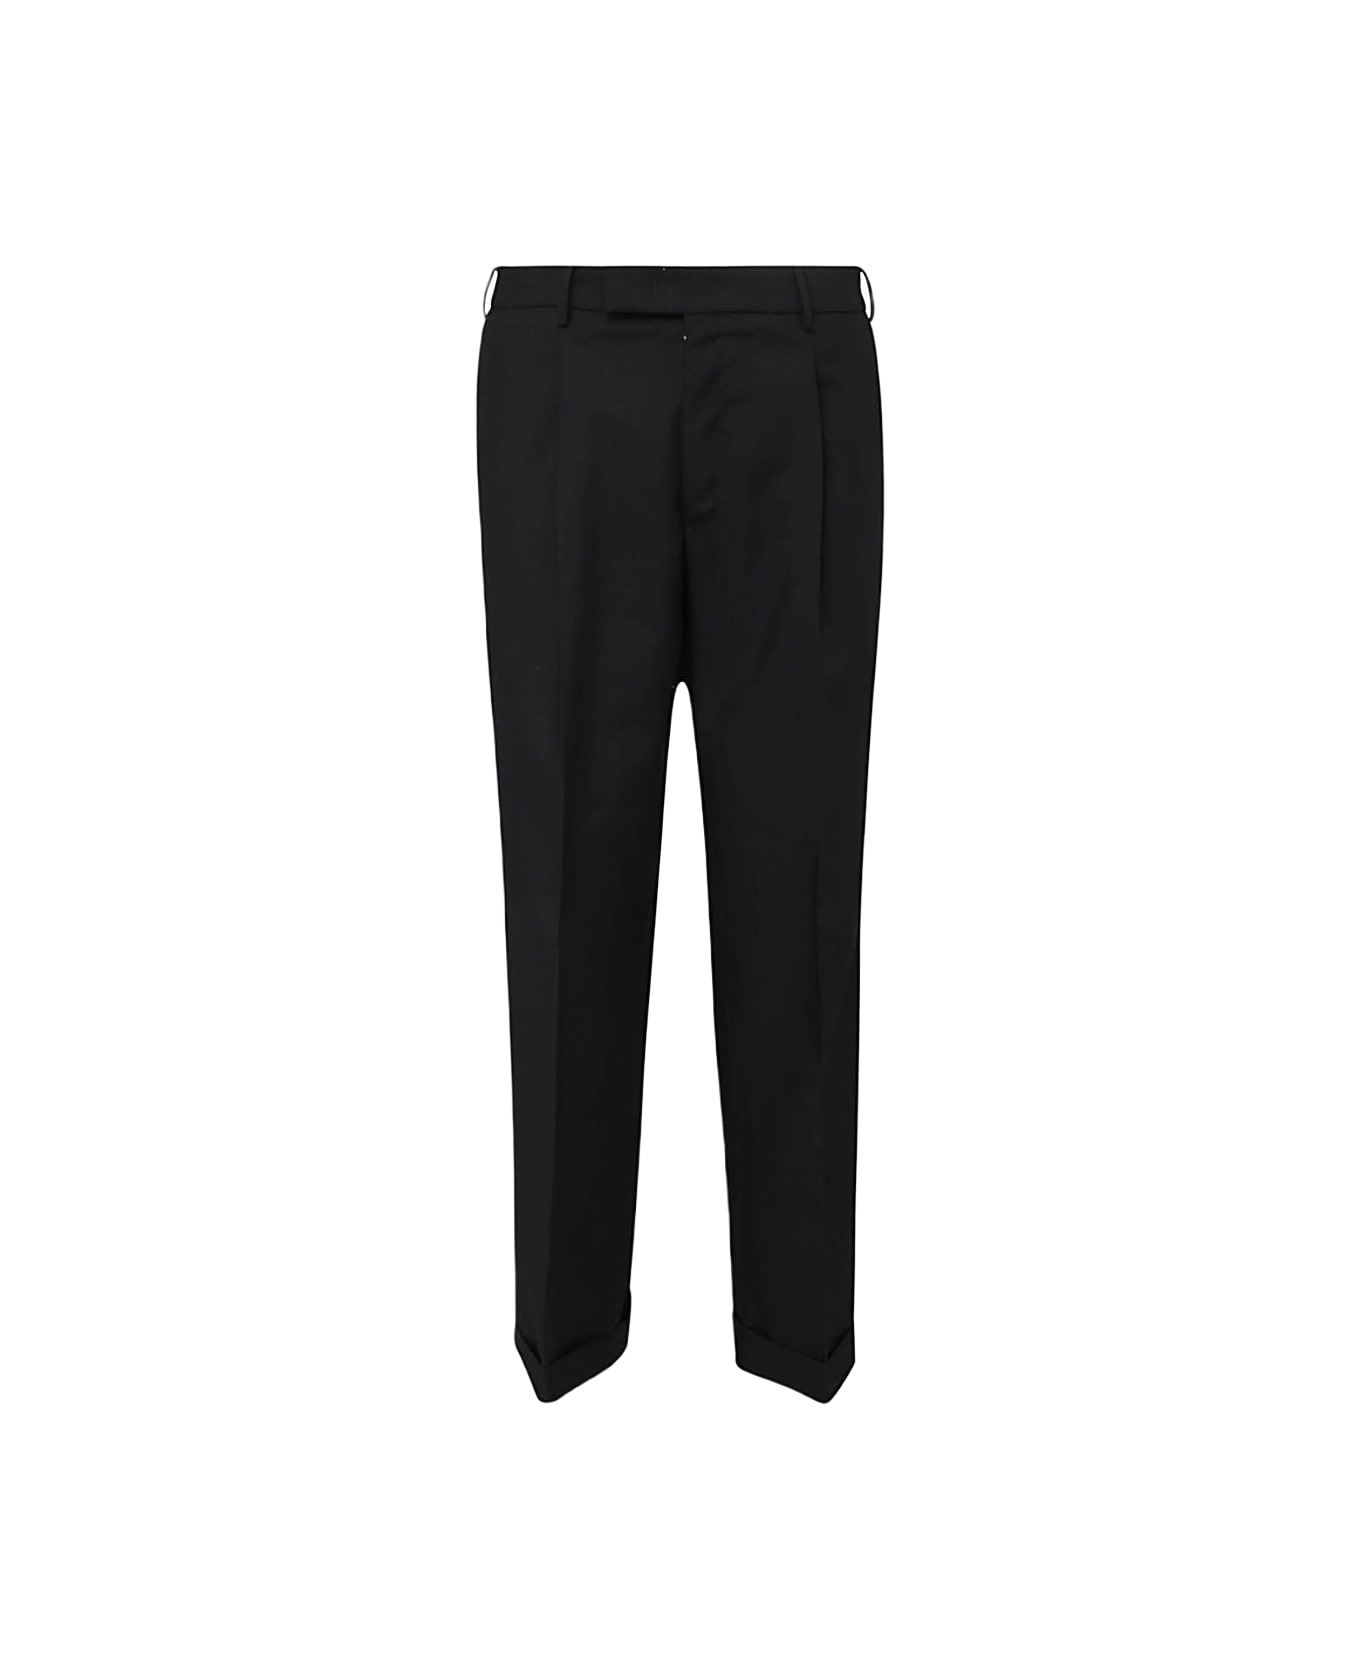 PT Torino Black Cotton Pants - Black